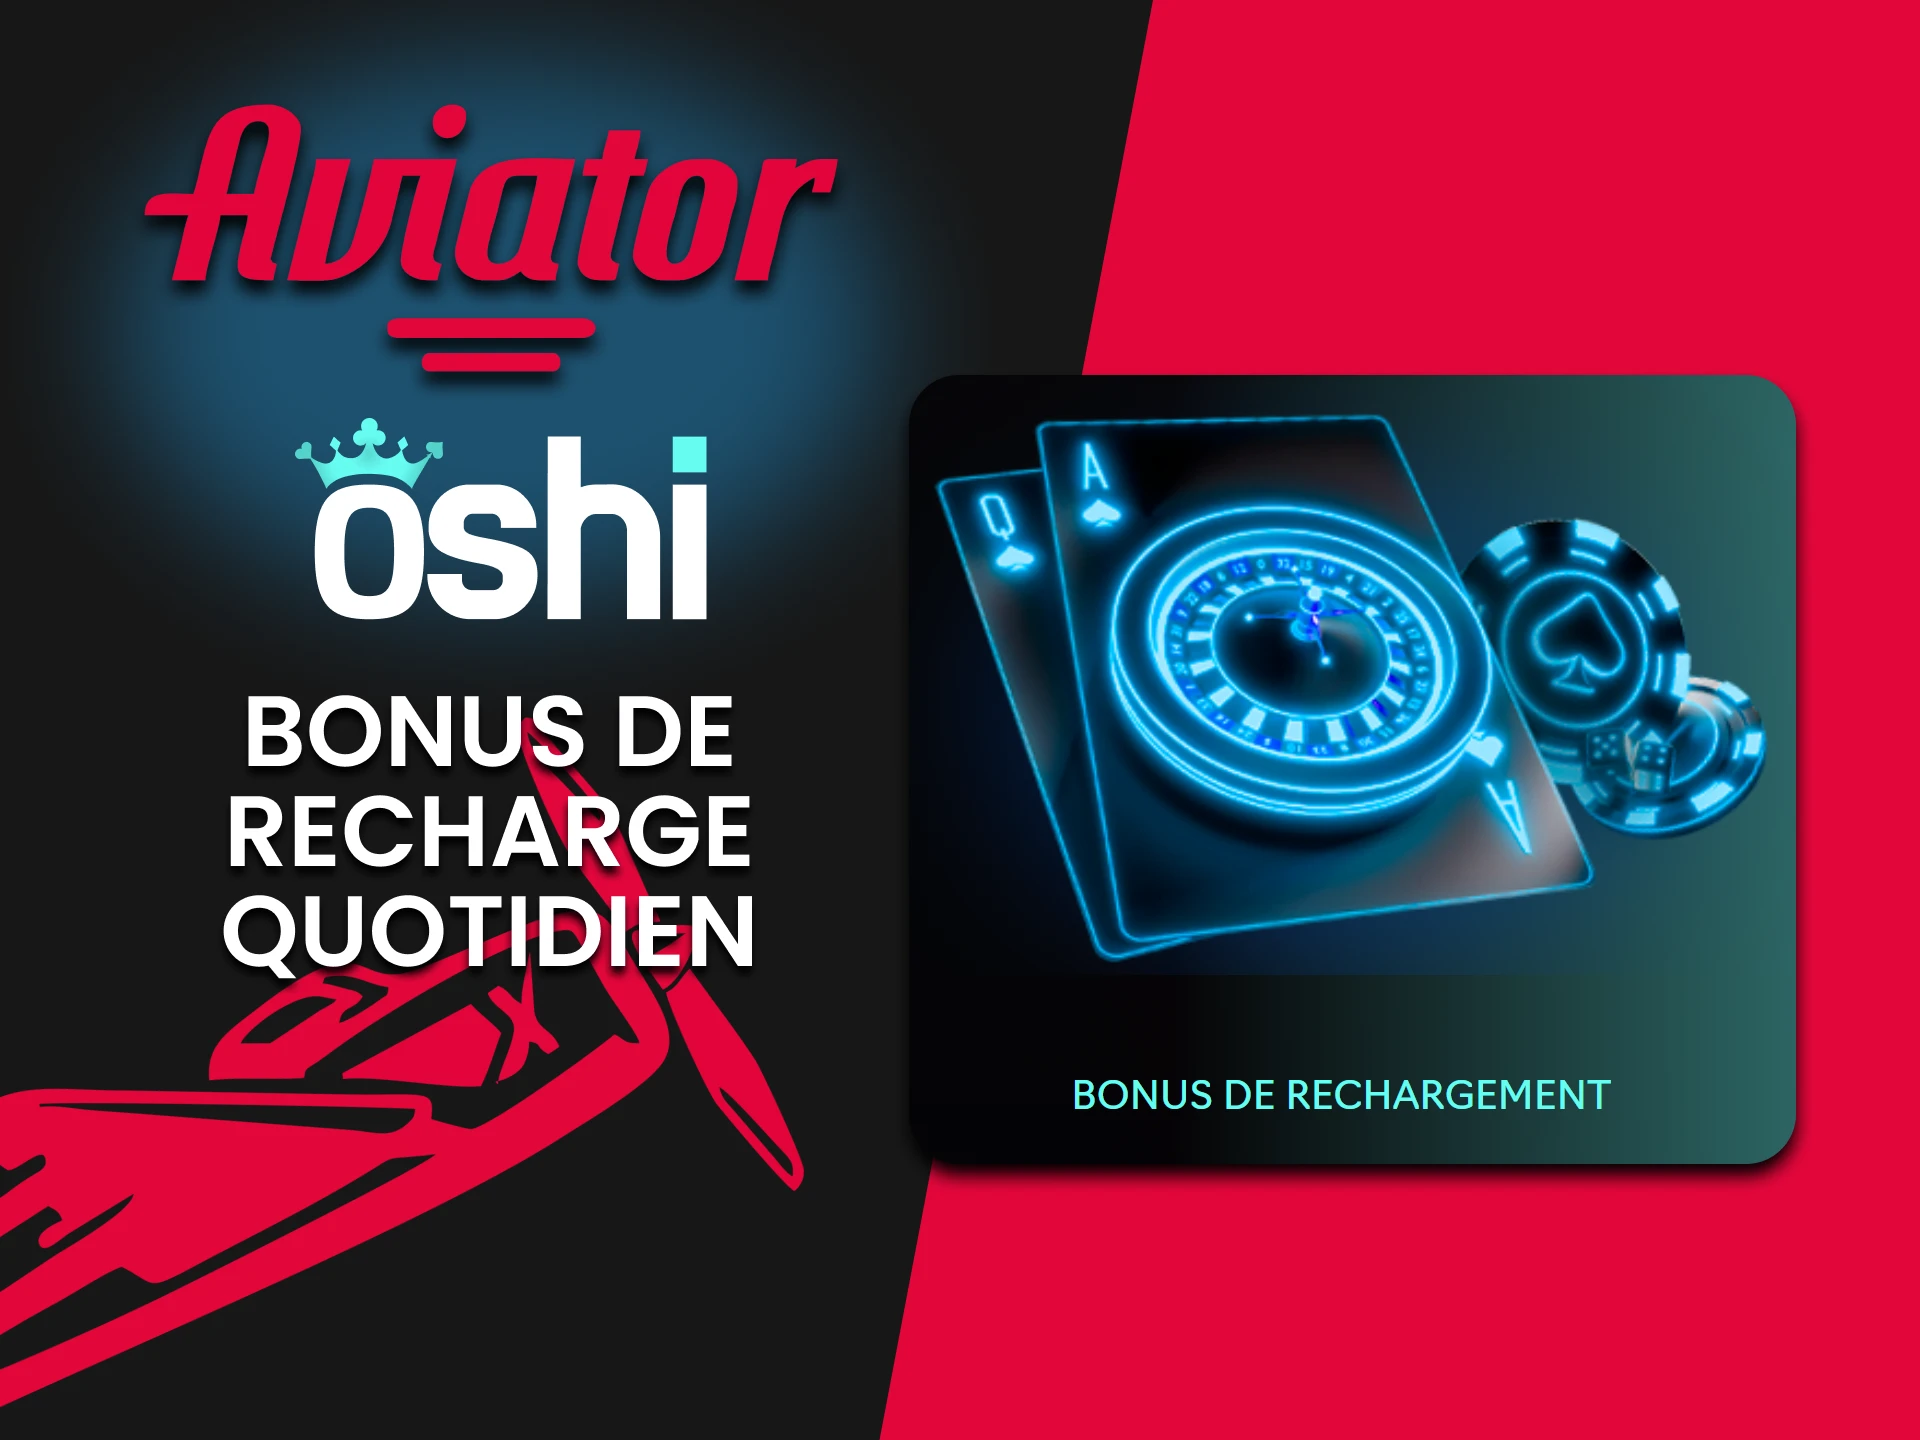 Oshi Casino offre un bonus de recharge pour l'Aviator.